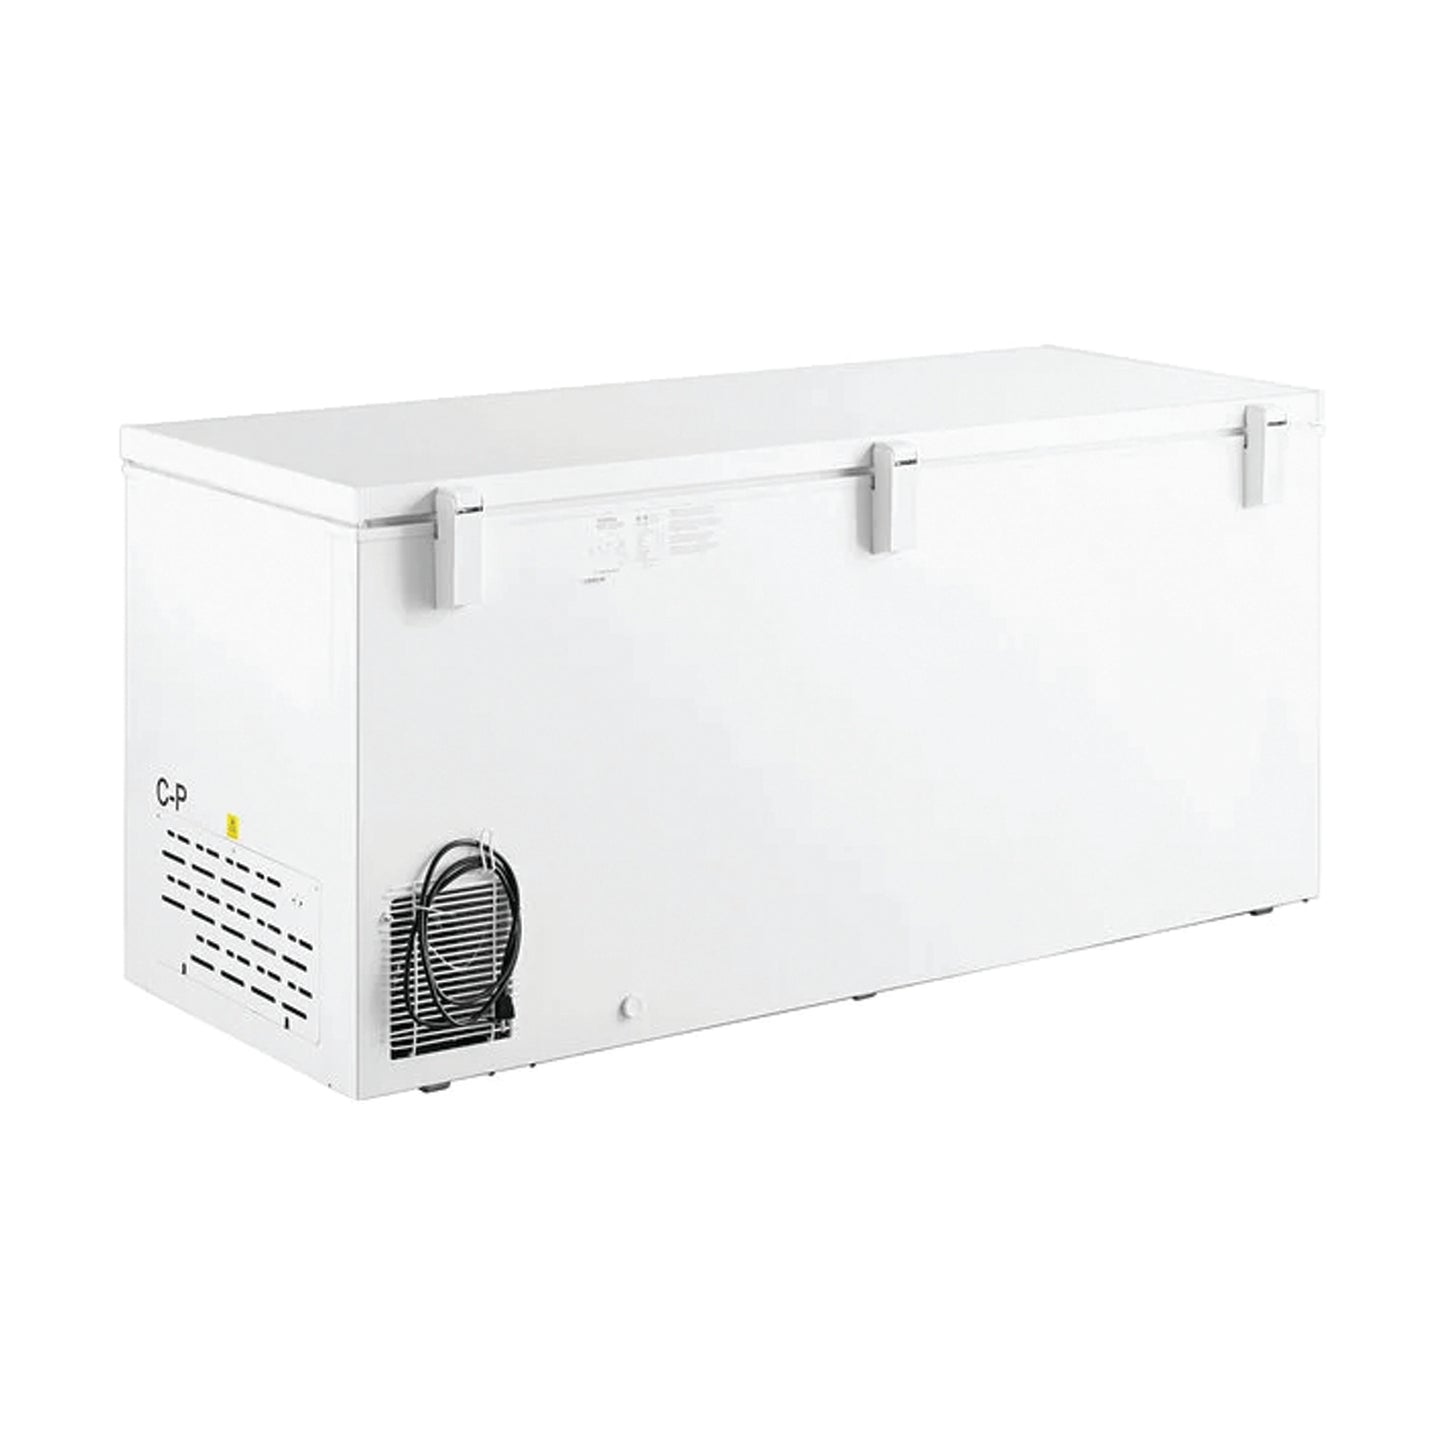 Advance Kitchen Pros - CF712933, 71" Commercial Chest Freezer 19.4 cu.ft. ETL